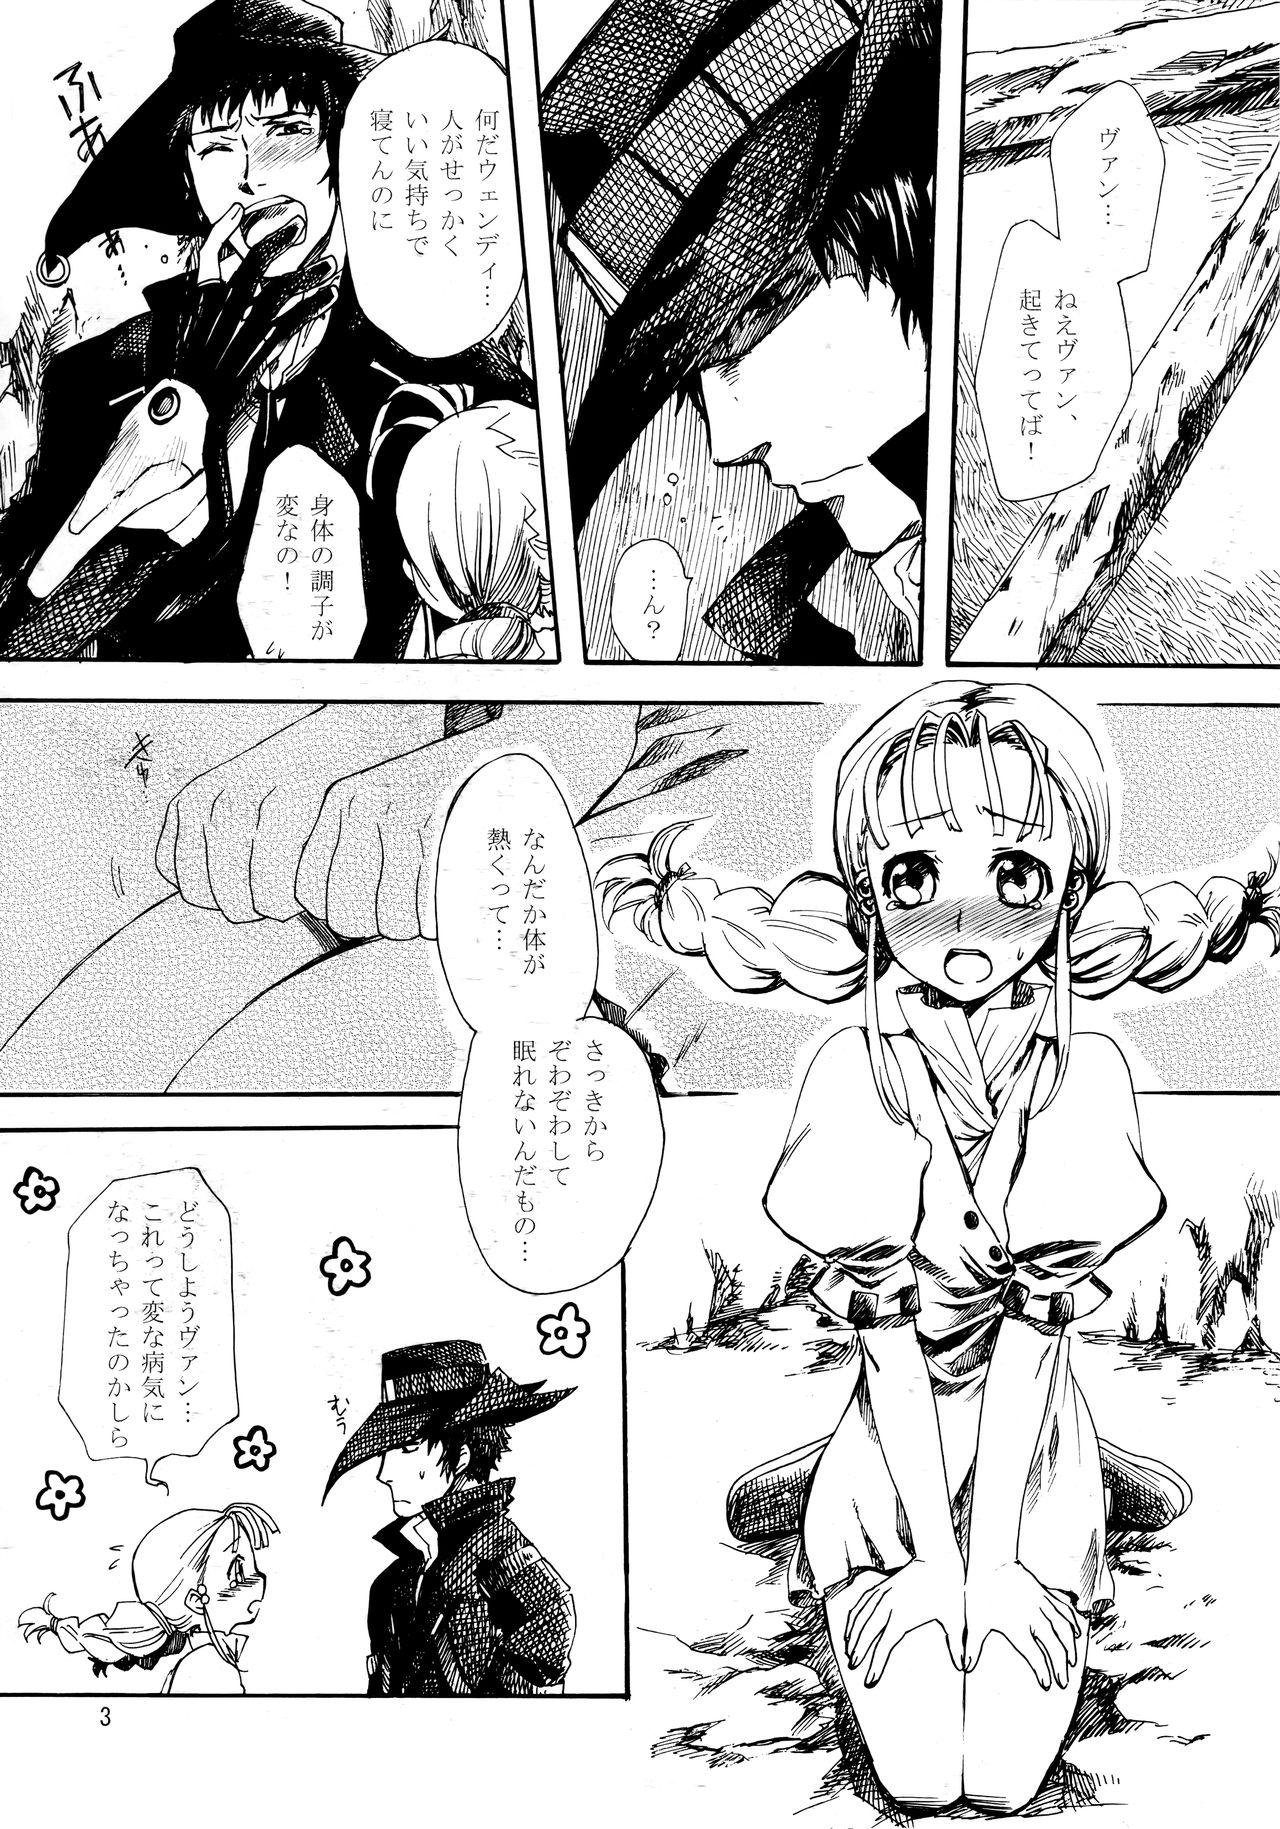 No Condom Inugoya no Sekai vol.09 - Gun x sword Huge Boobs - Page 2